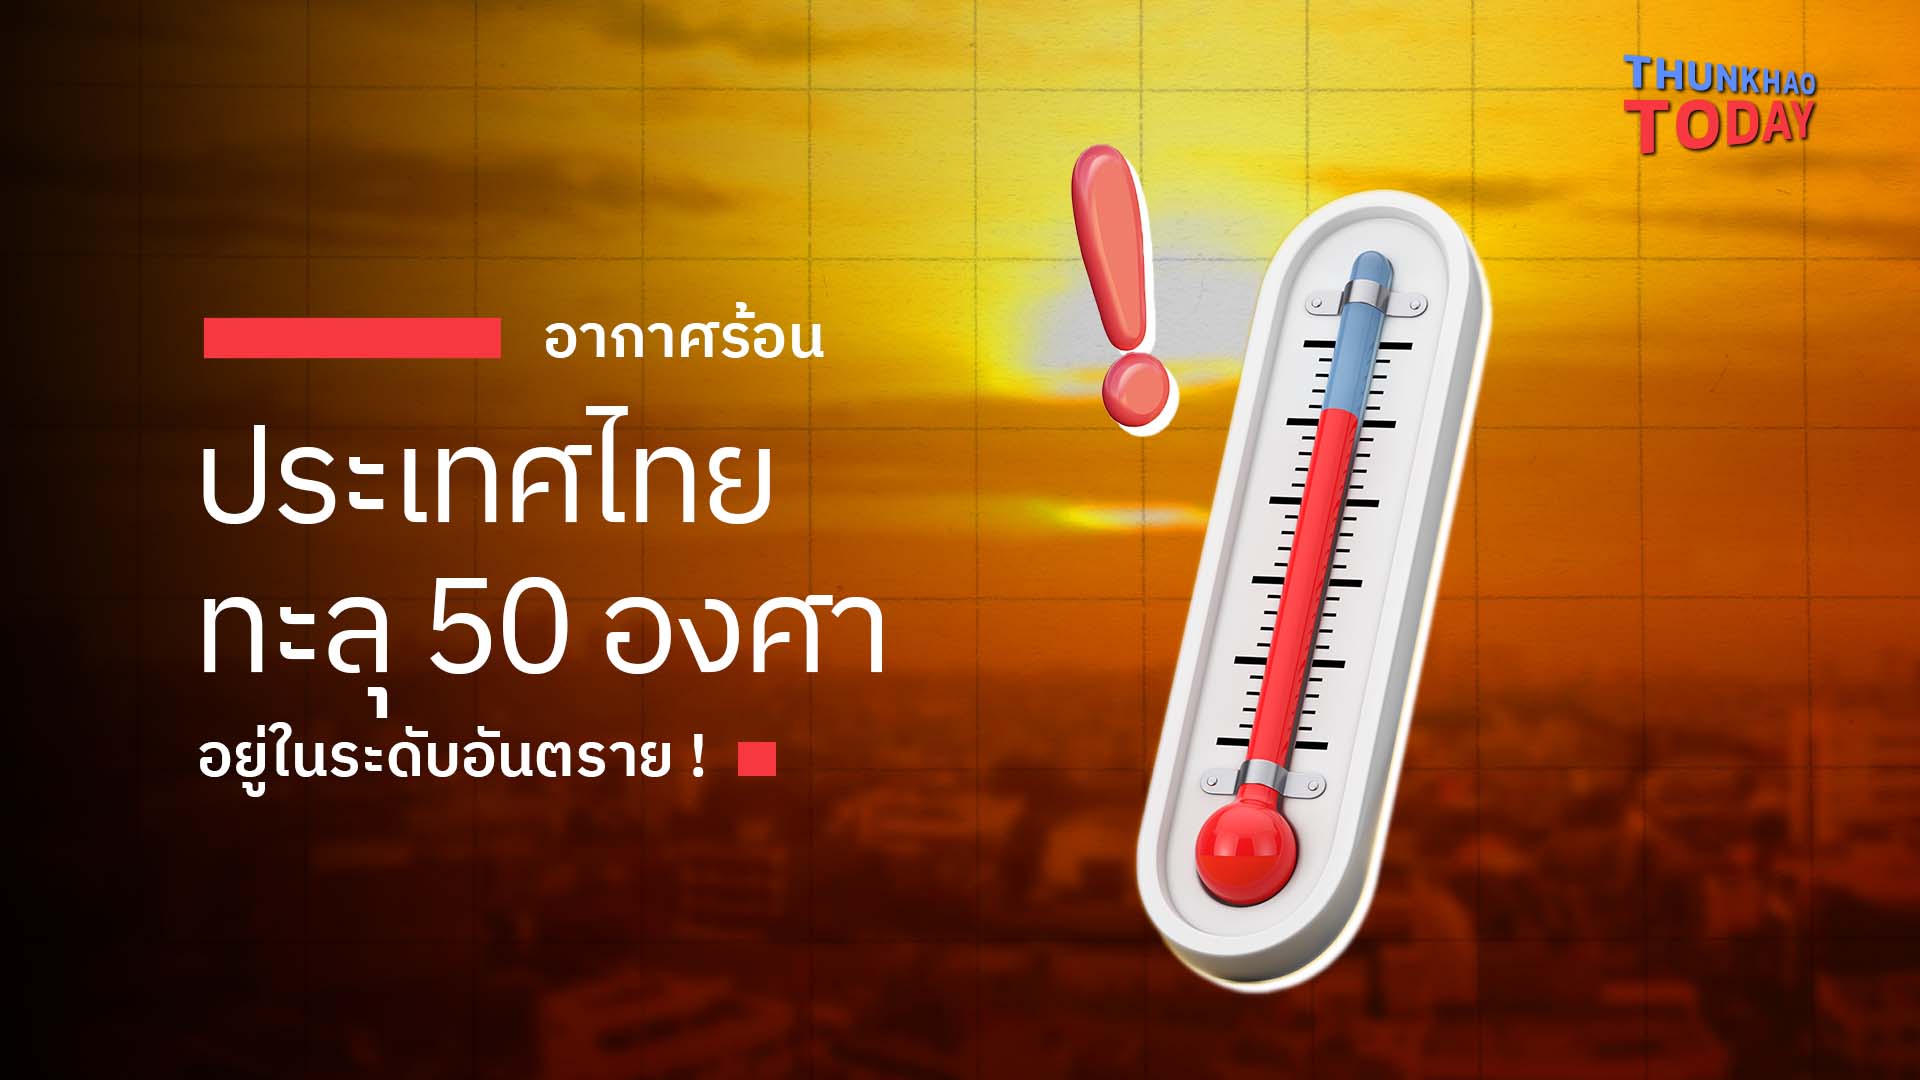 อากาศร้อนประเทศไทยทะลุ 50 องศา อยู่ในระดับอันตราย !